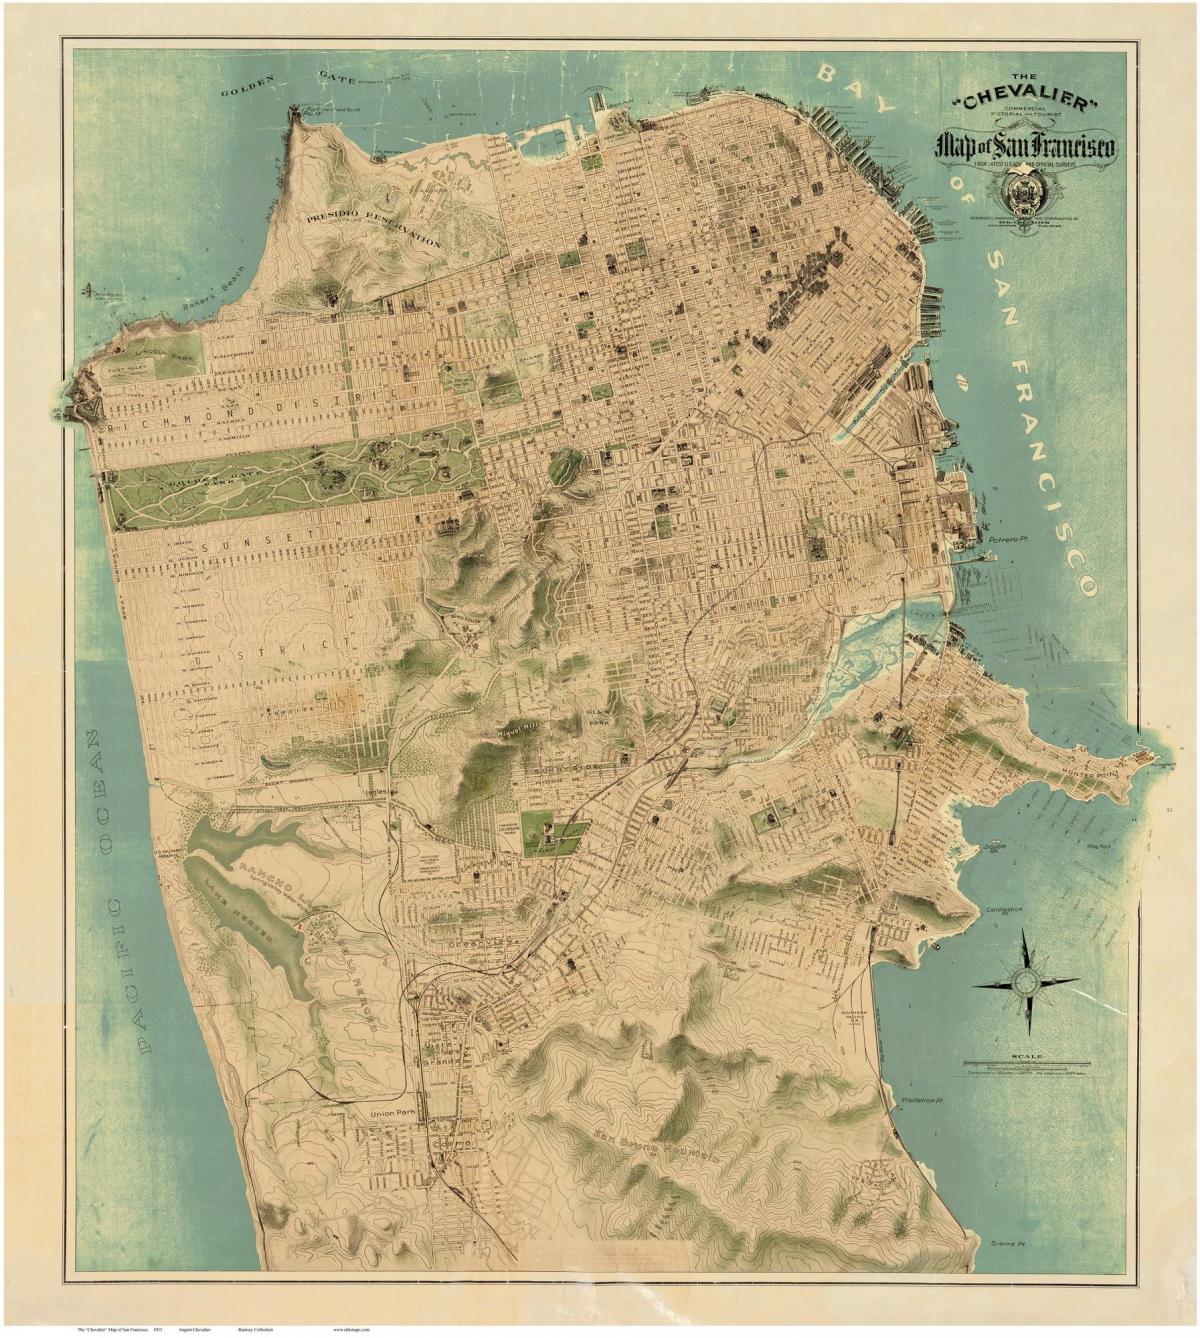 Peta lama San Francisco 